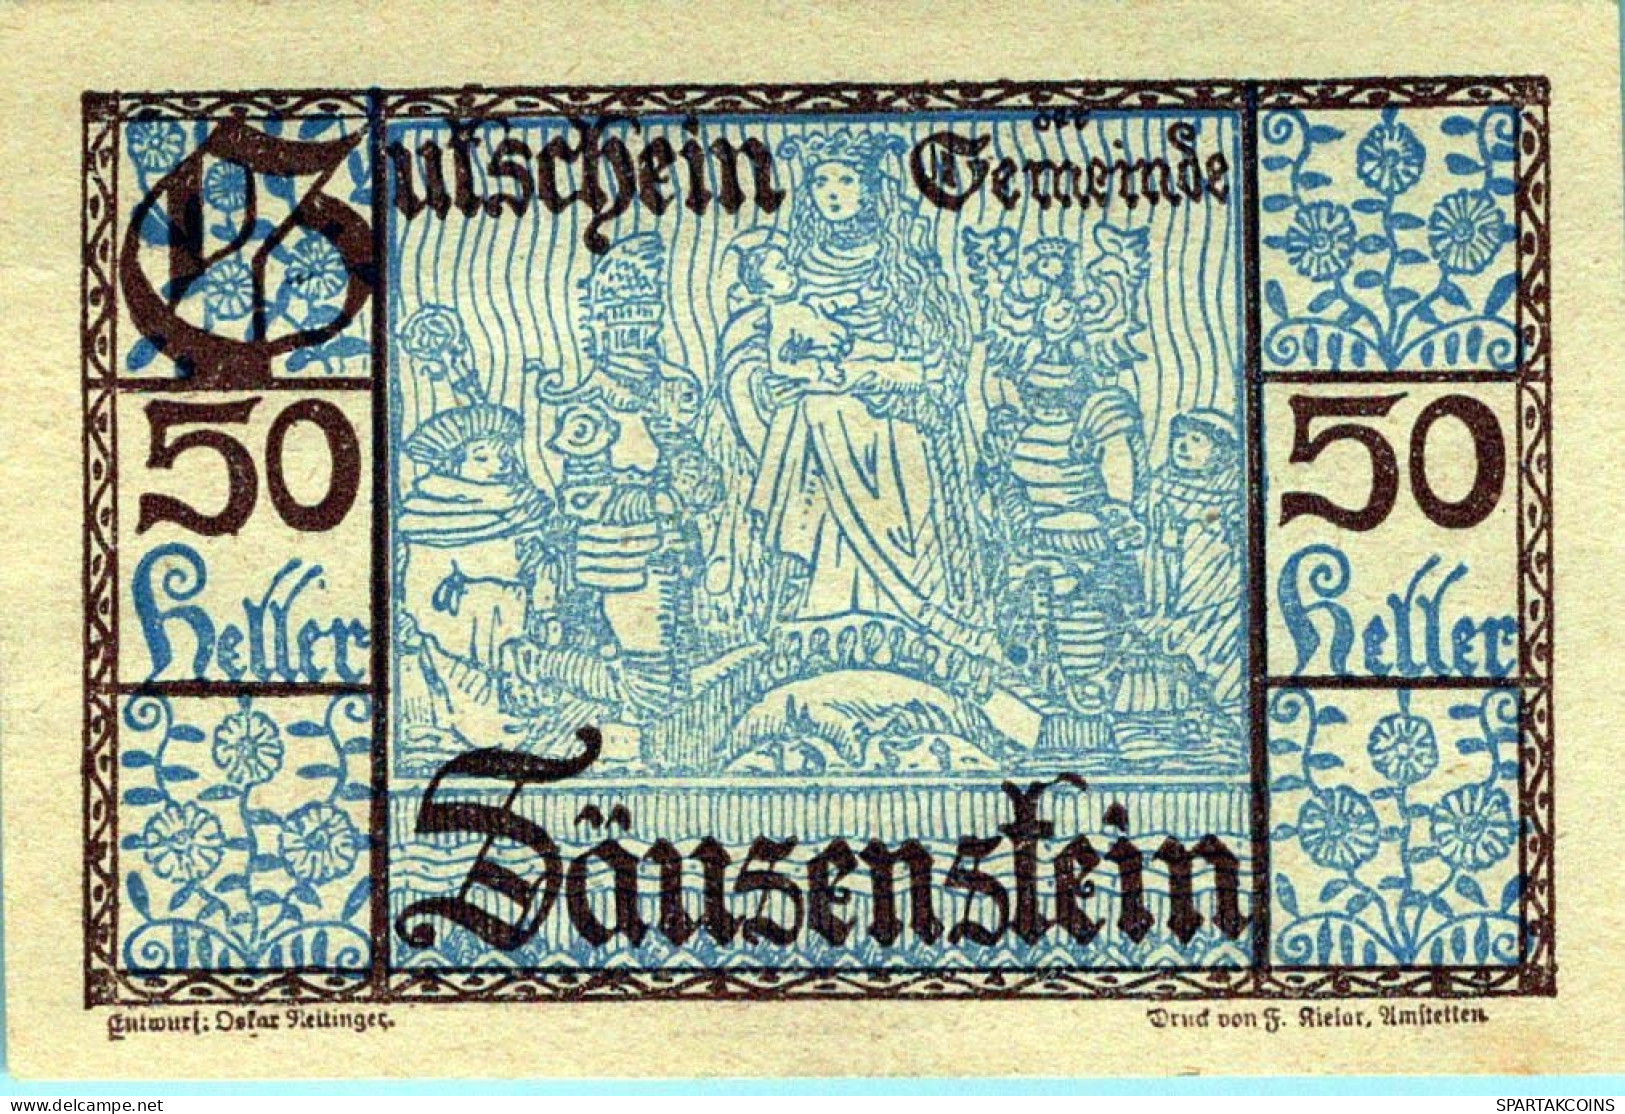 50 HELLER 1920 Stadt SÄUSENSTEIN Niedrigeren Österreich Notgeld #PI160 - [11] Local Banknote Issues